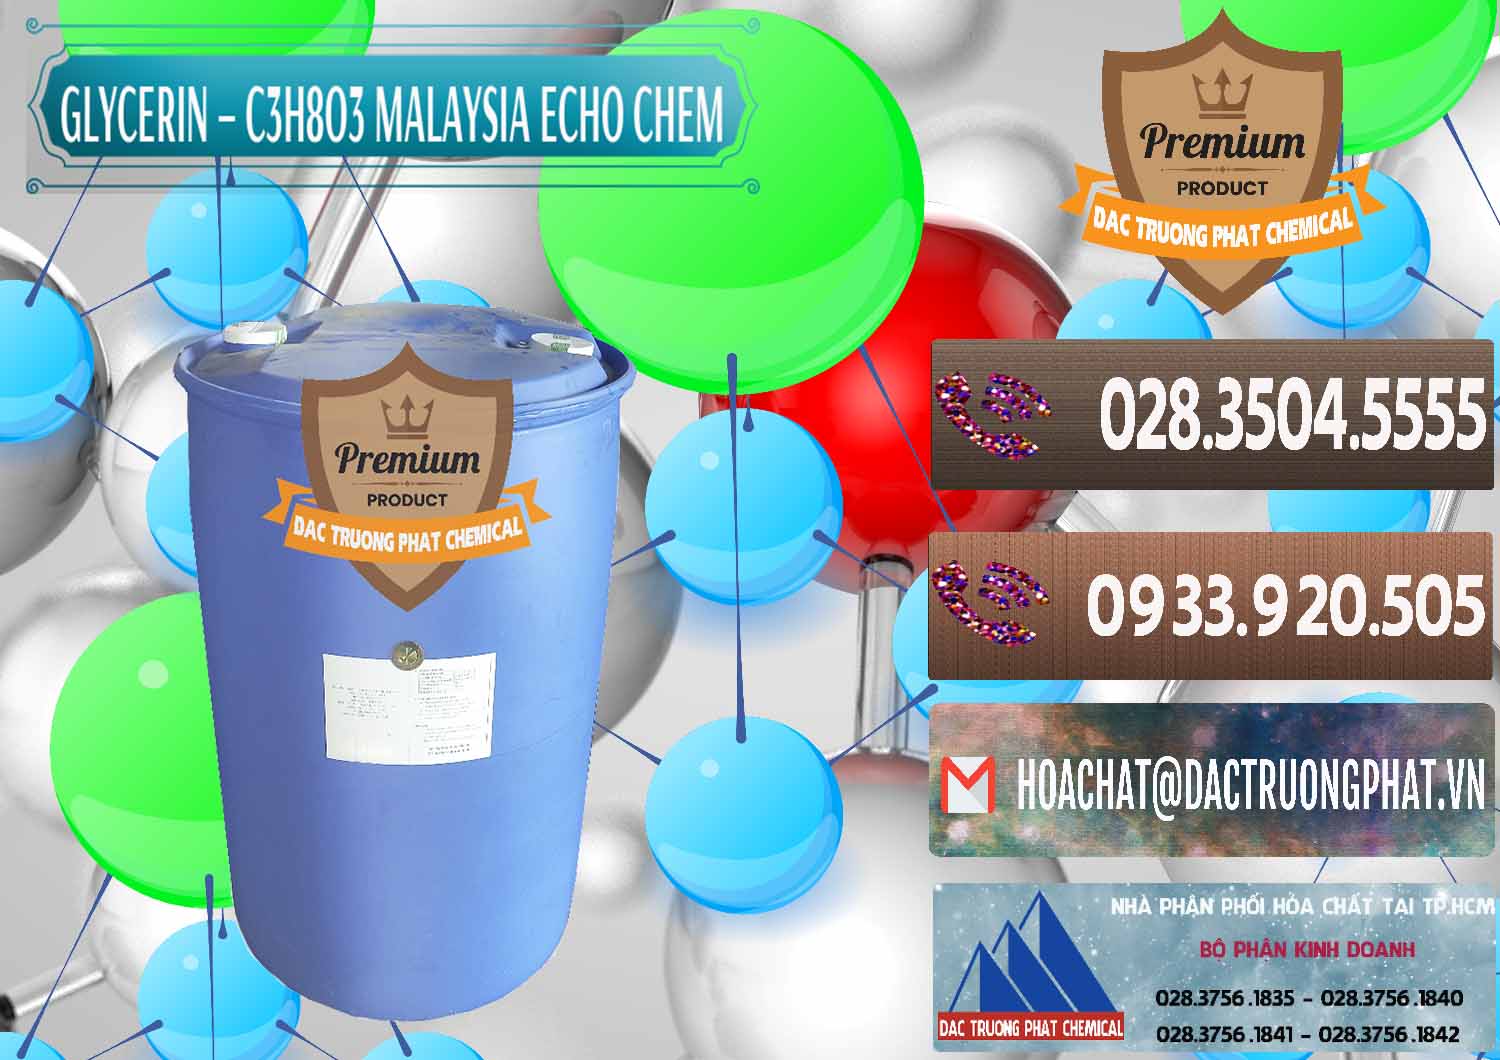 Công ty kinh doanh _ bán Glycerin – C3H8O3 99.7% Echo Chem Malaysia - 0273 - Nhà nhập khẩu và cung cấp hóa chất tại TP.HCM - hoachatviet.net